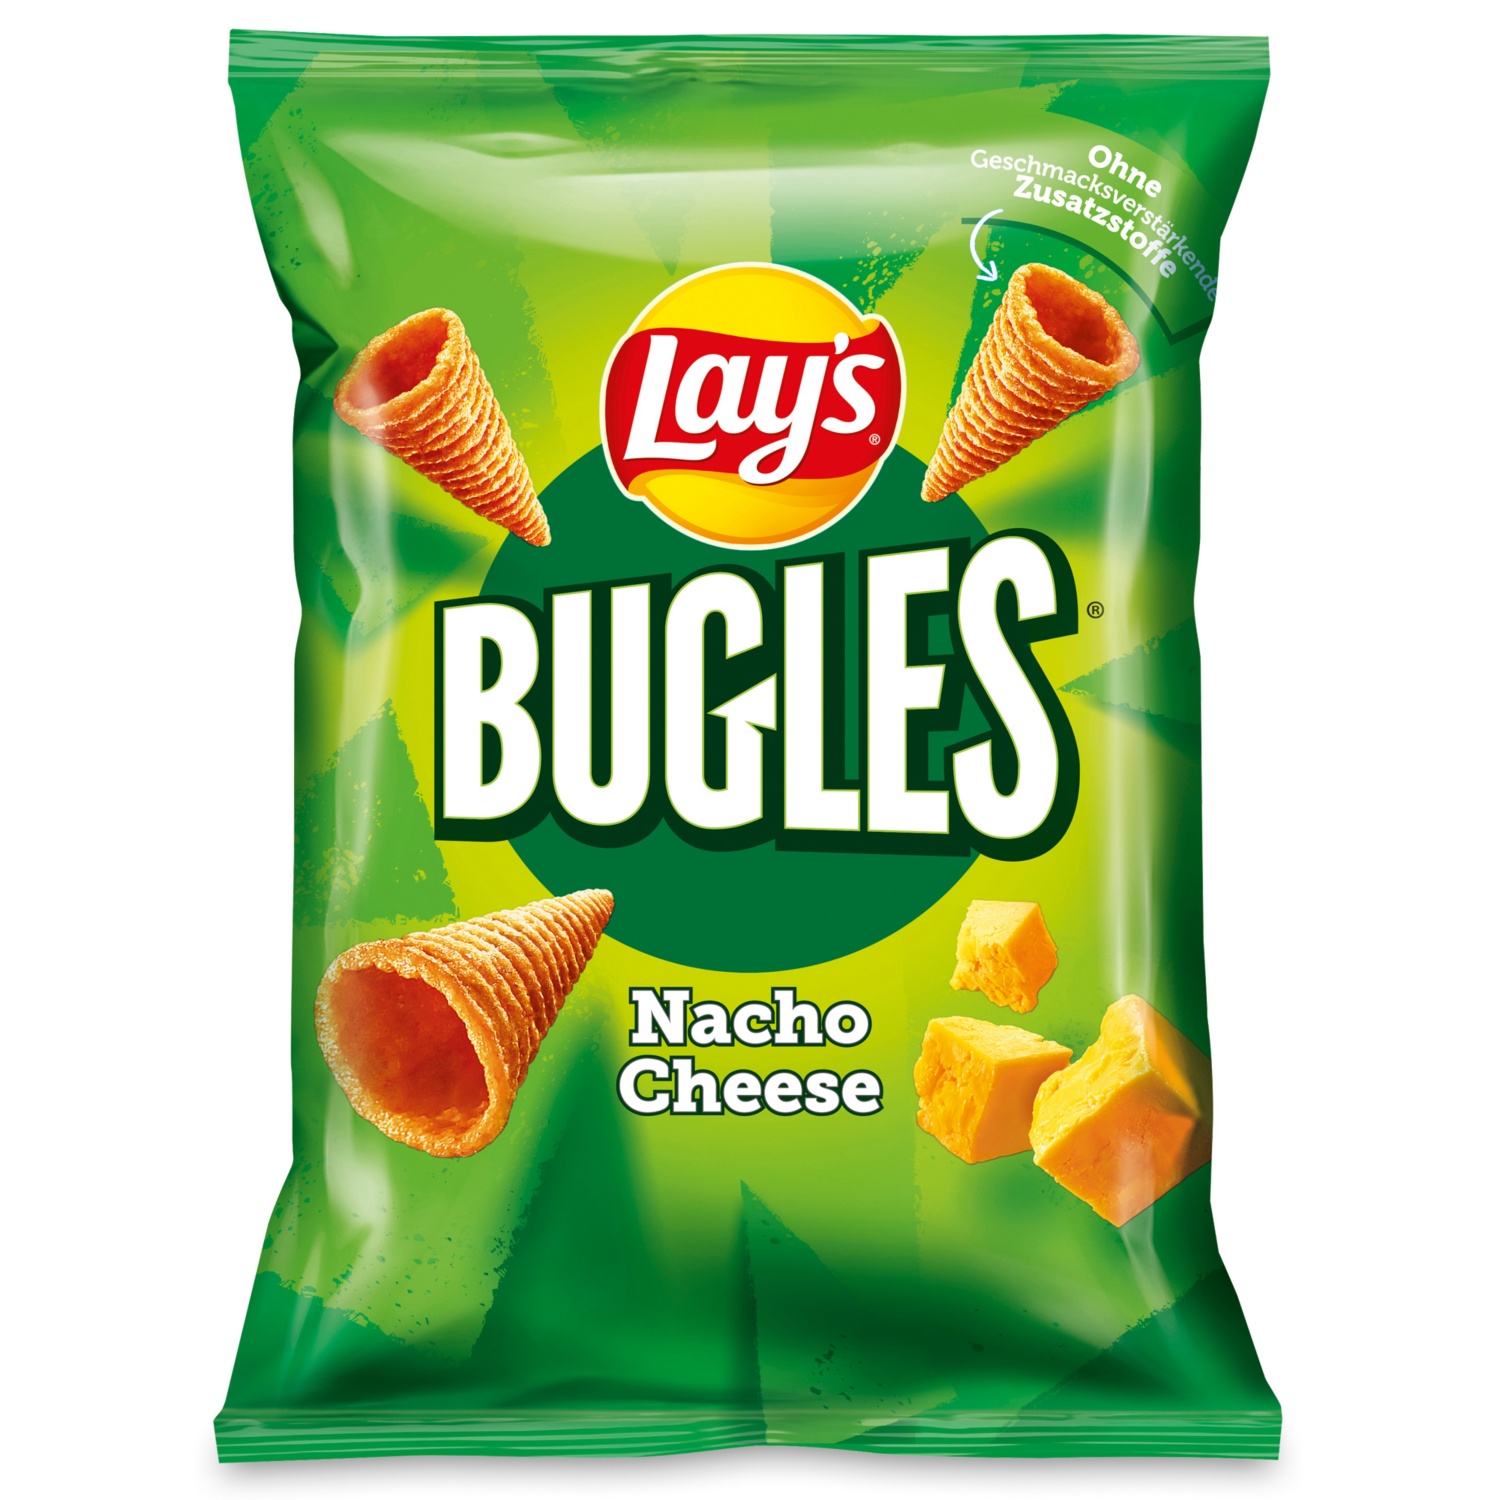 LAY'S Bugles, Nacho Cheese